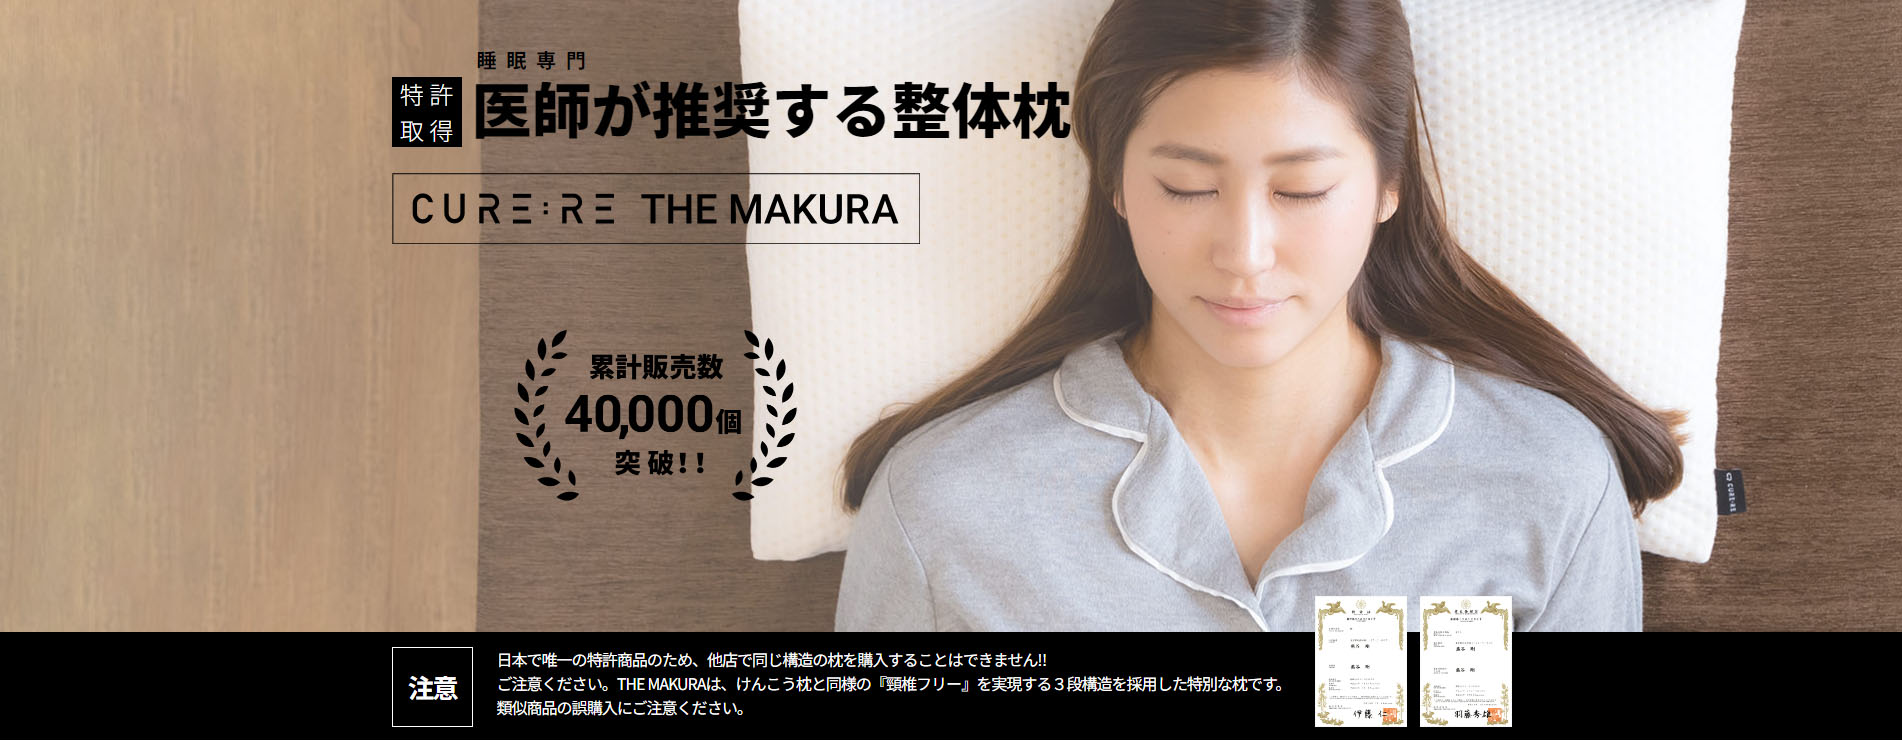 キュアレ 枕｜Cure:Re THE MAKURA】整体師考案の枕で超回復 ｜ QITANO 